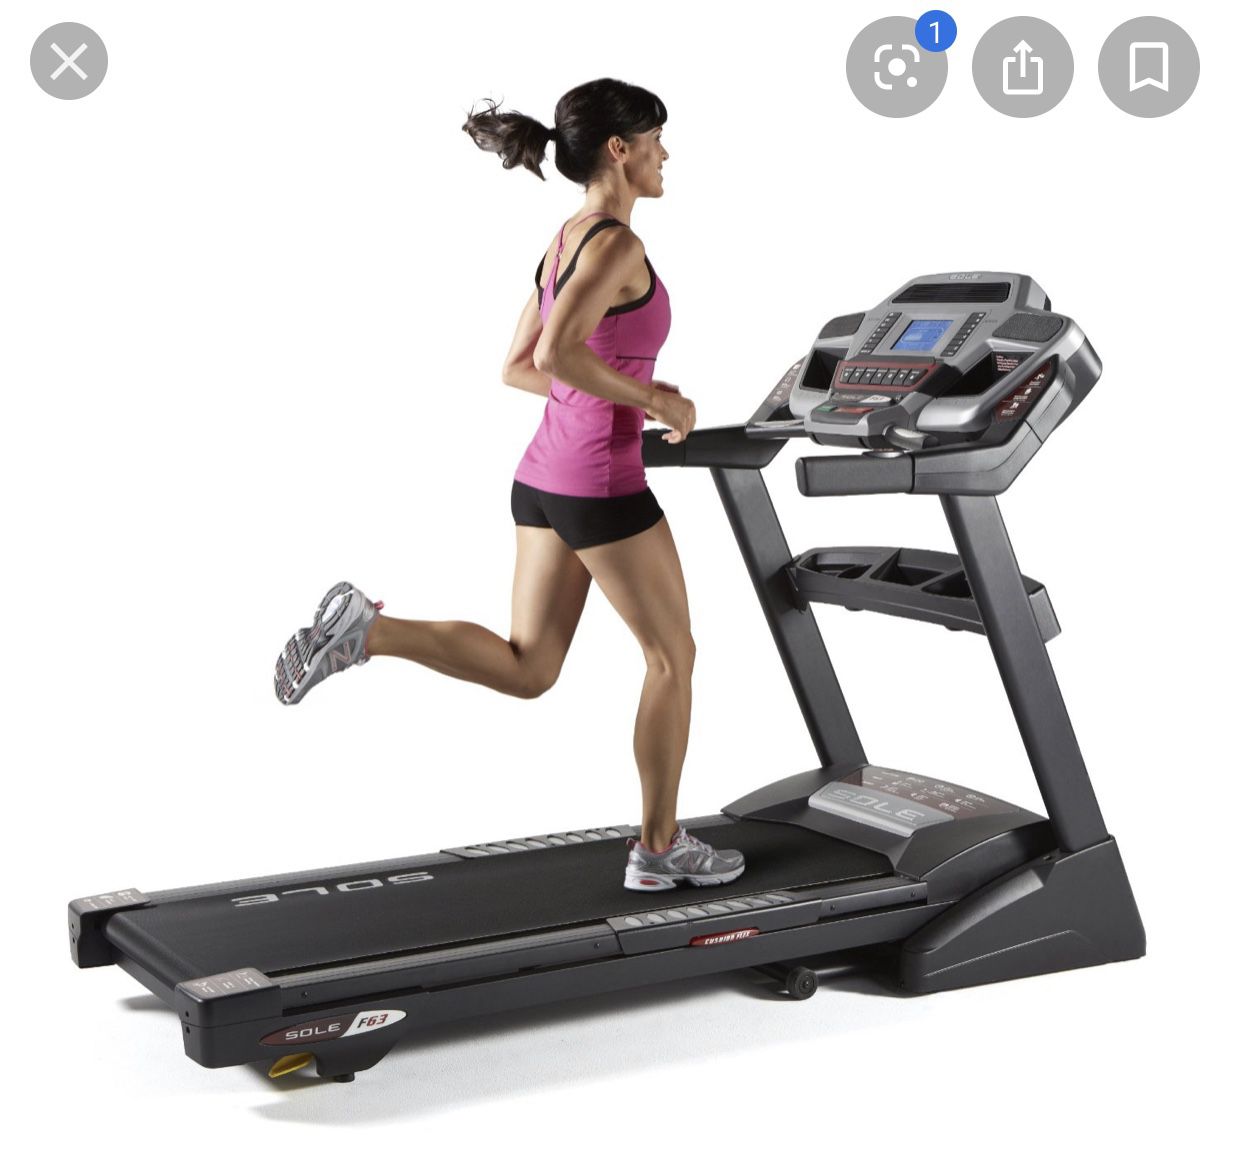 Sole F63 treadmill